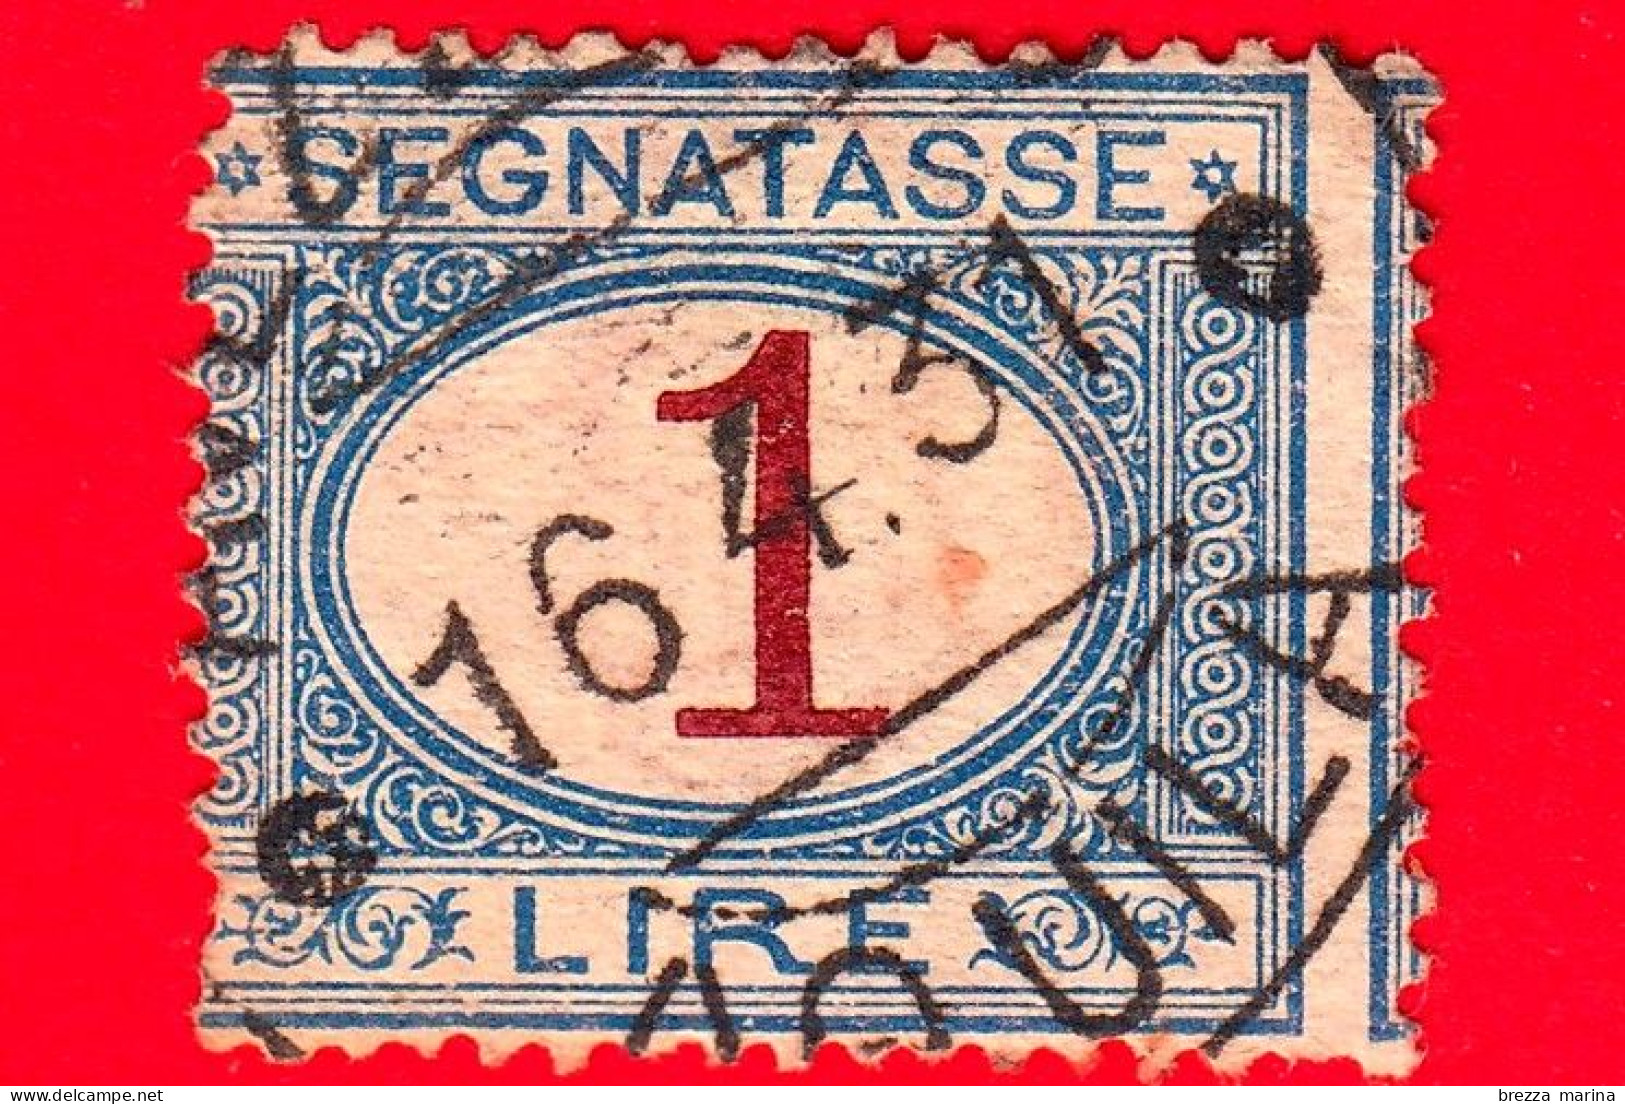 REGNO D'ITALIA - Usato - 1890 - Segnatasse - Cifra Entro Un Ovale - 1 L. - Taxe